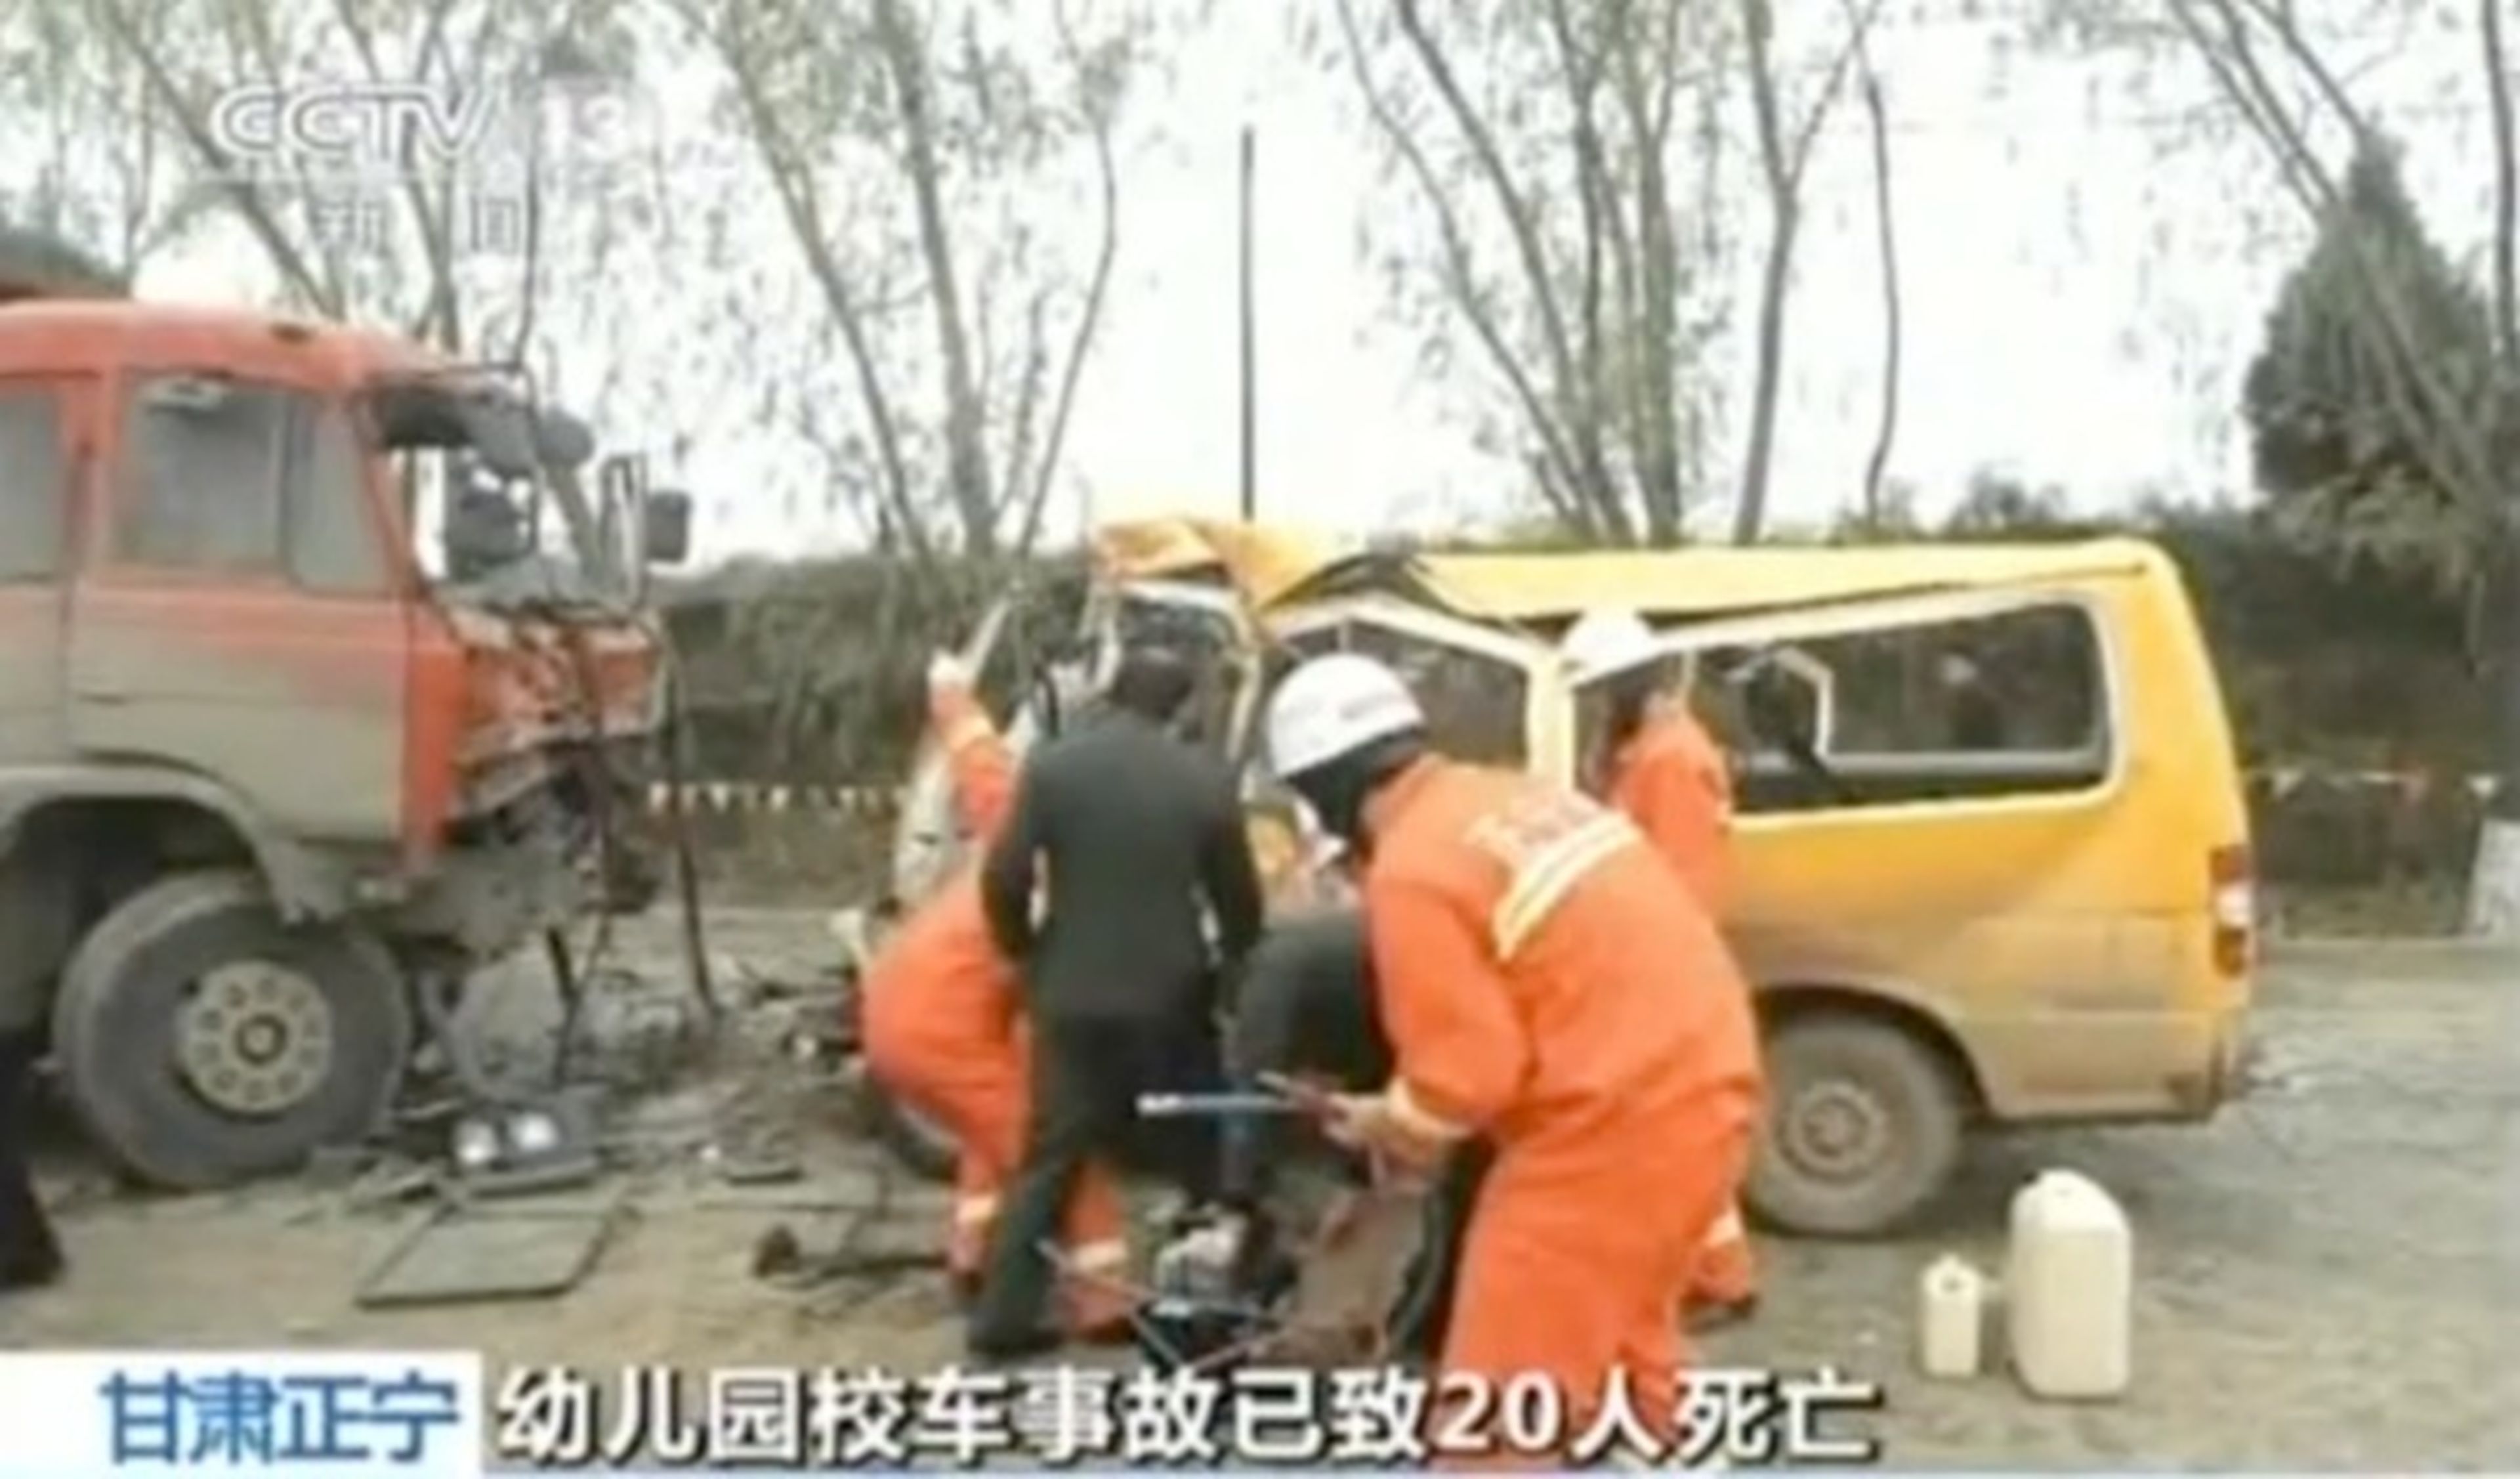 20 muertos en China al chocar un camión con una furgoneta